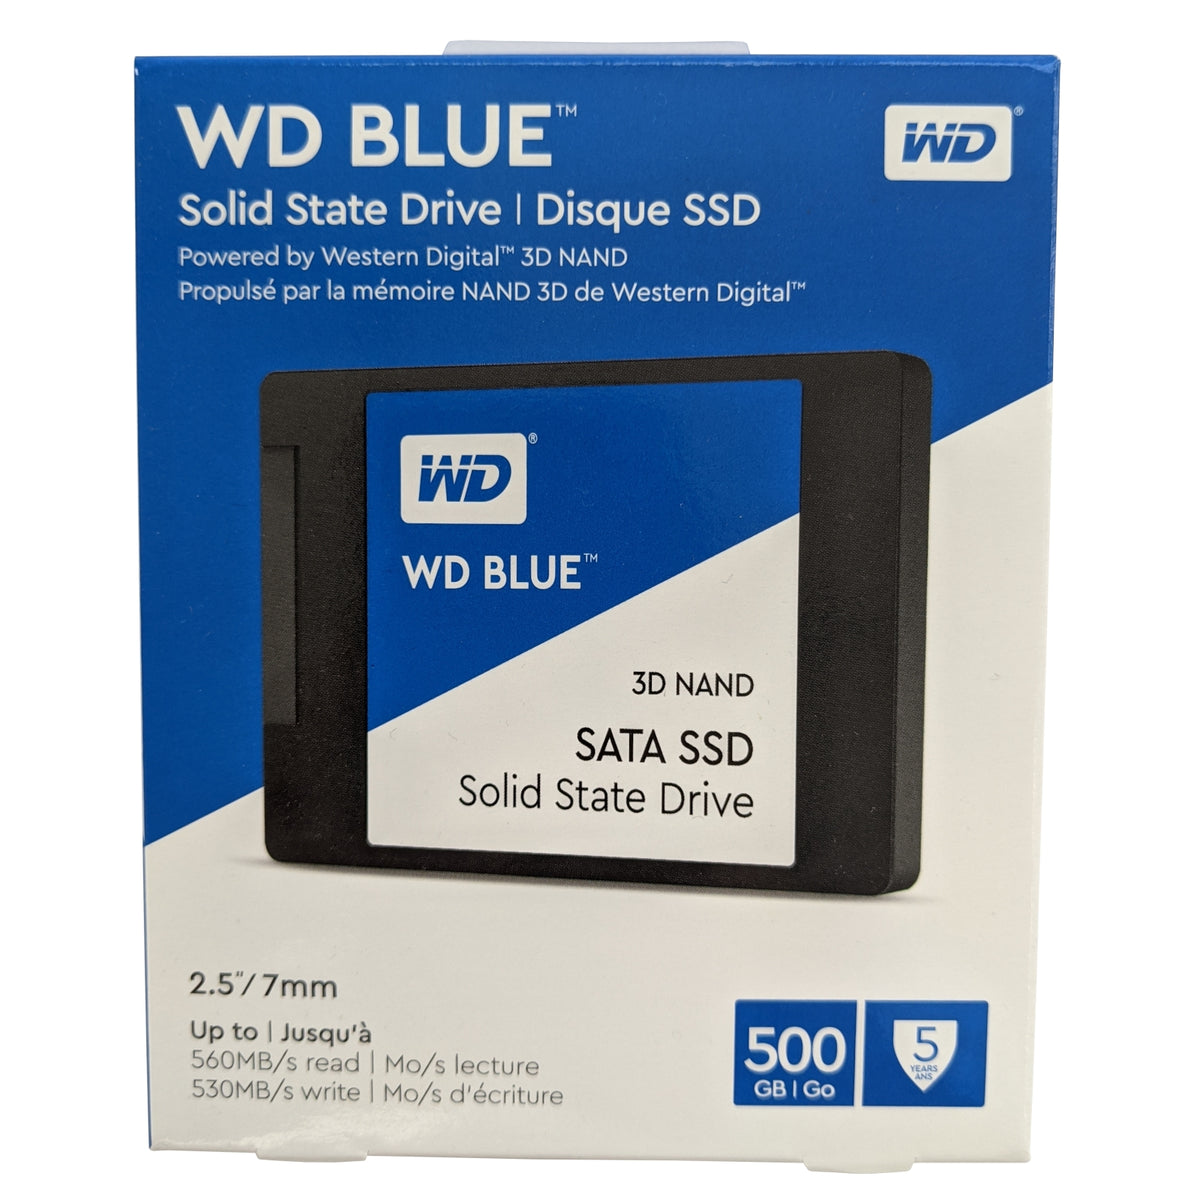 Твердотельный накопитель WD Blue wds100t2b0a 1тб, 2.5", SATA III. SSD накопитель WD wds100t2b0a. Wds100t2b0a